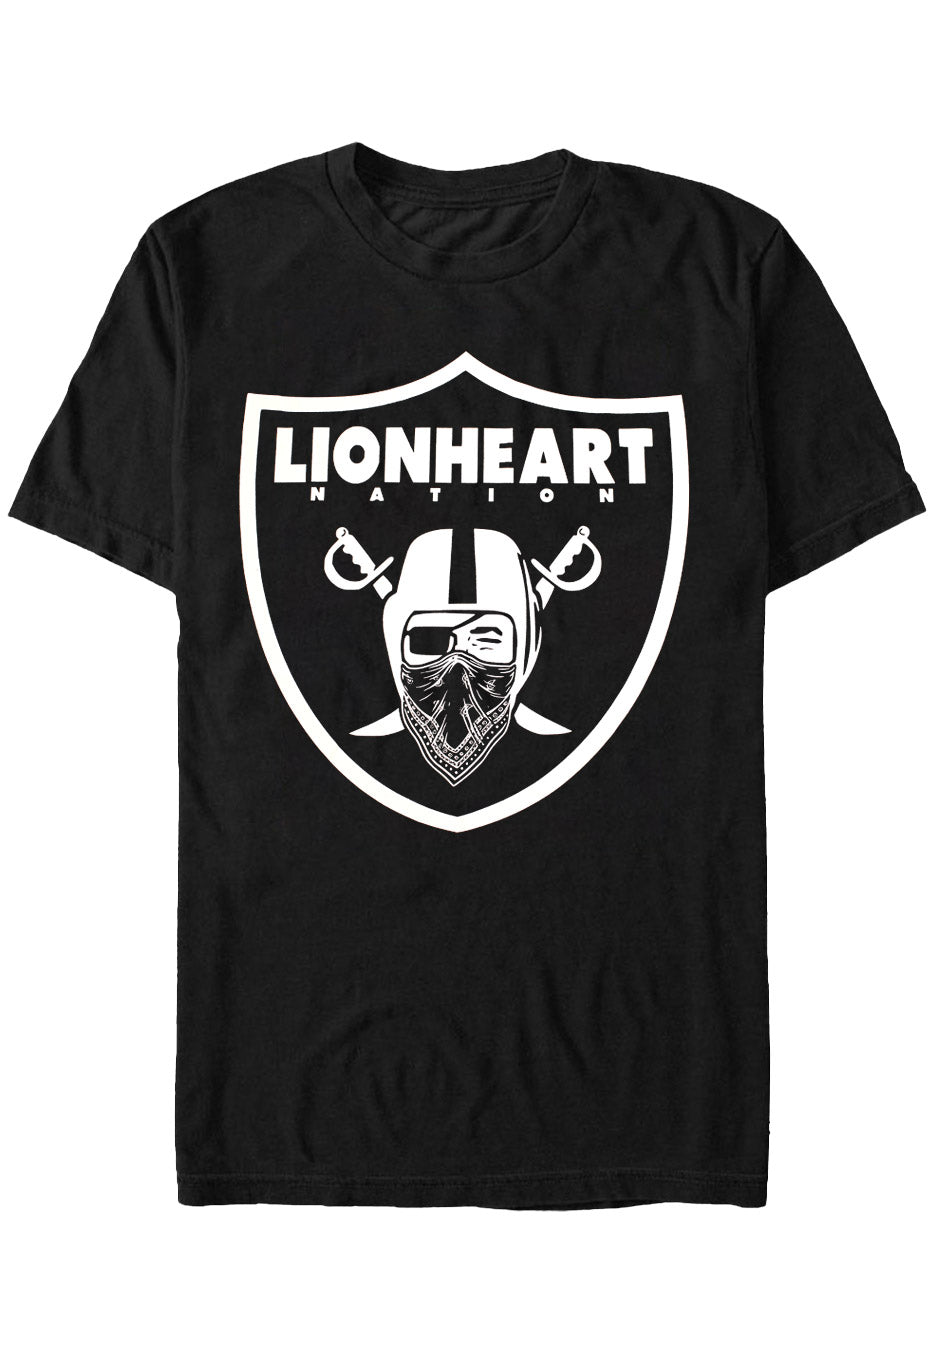 Lionheart - West Coast Nation - T-Shirt